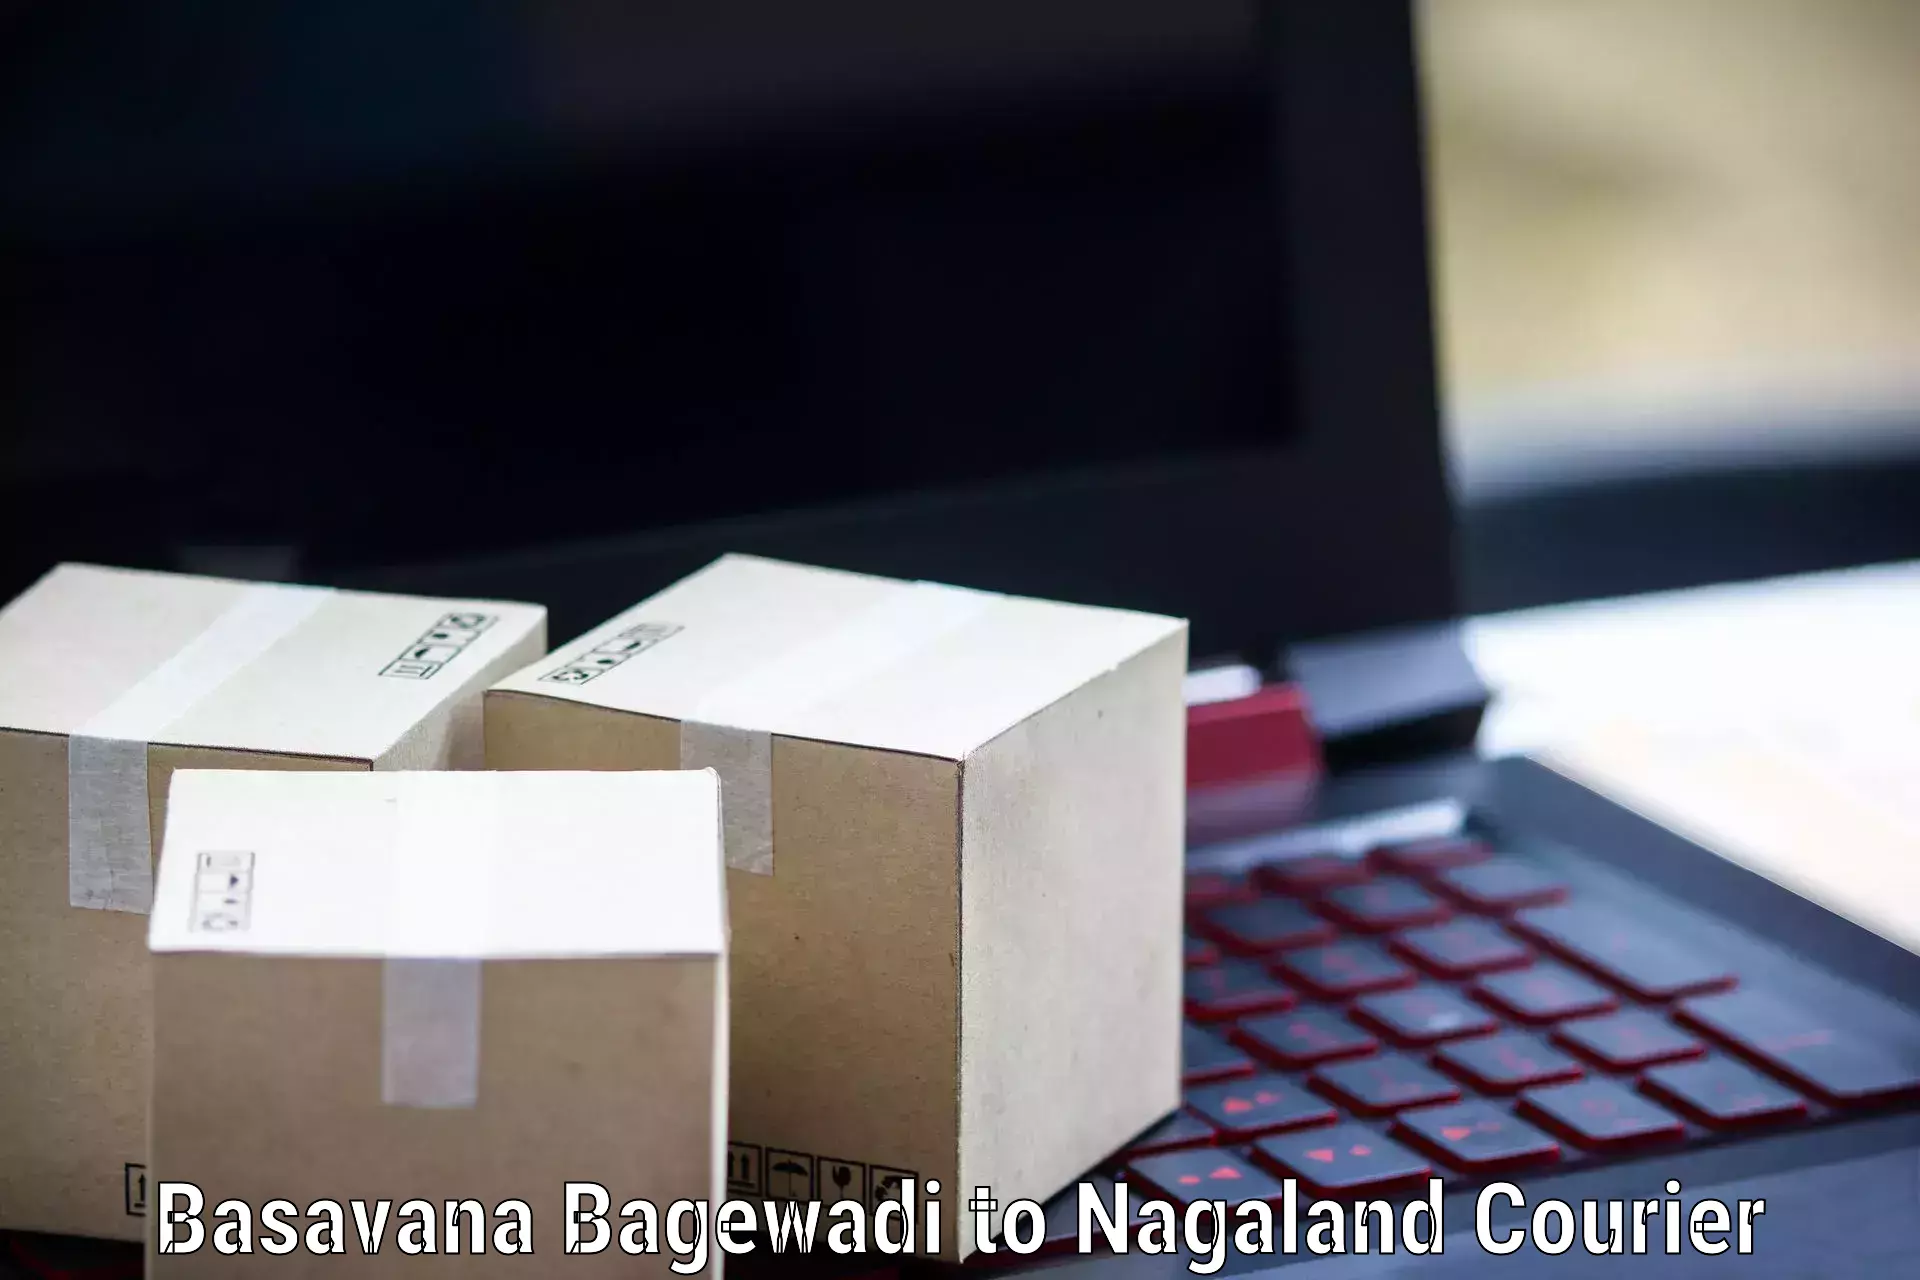 Same-day delivery solutions Basavana Bagewadi to NIT Nagaland